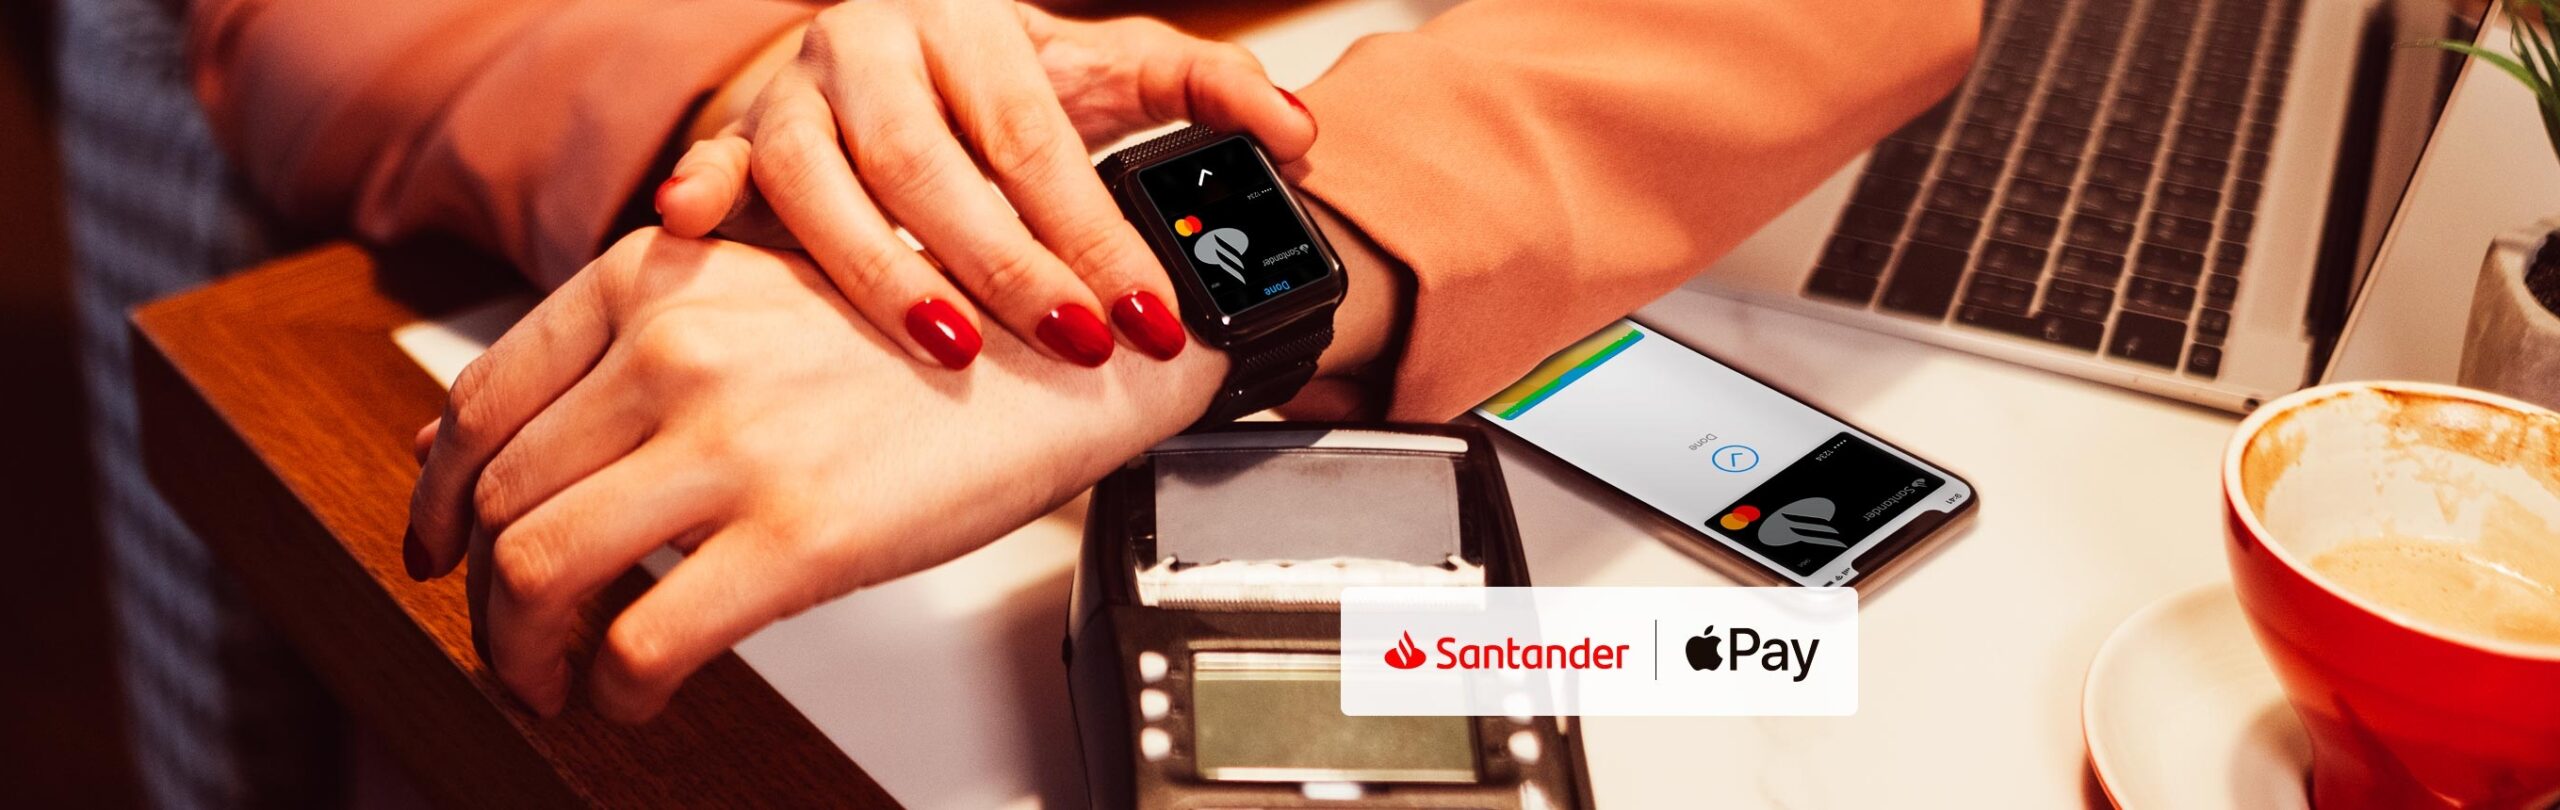 Santander no Apple Pay